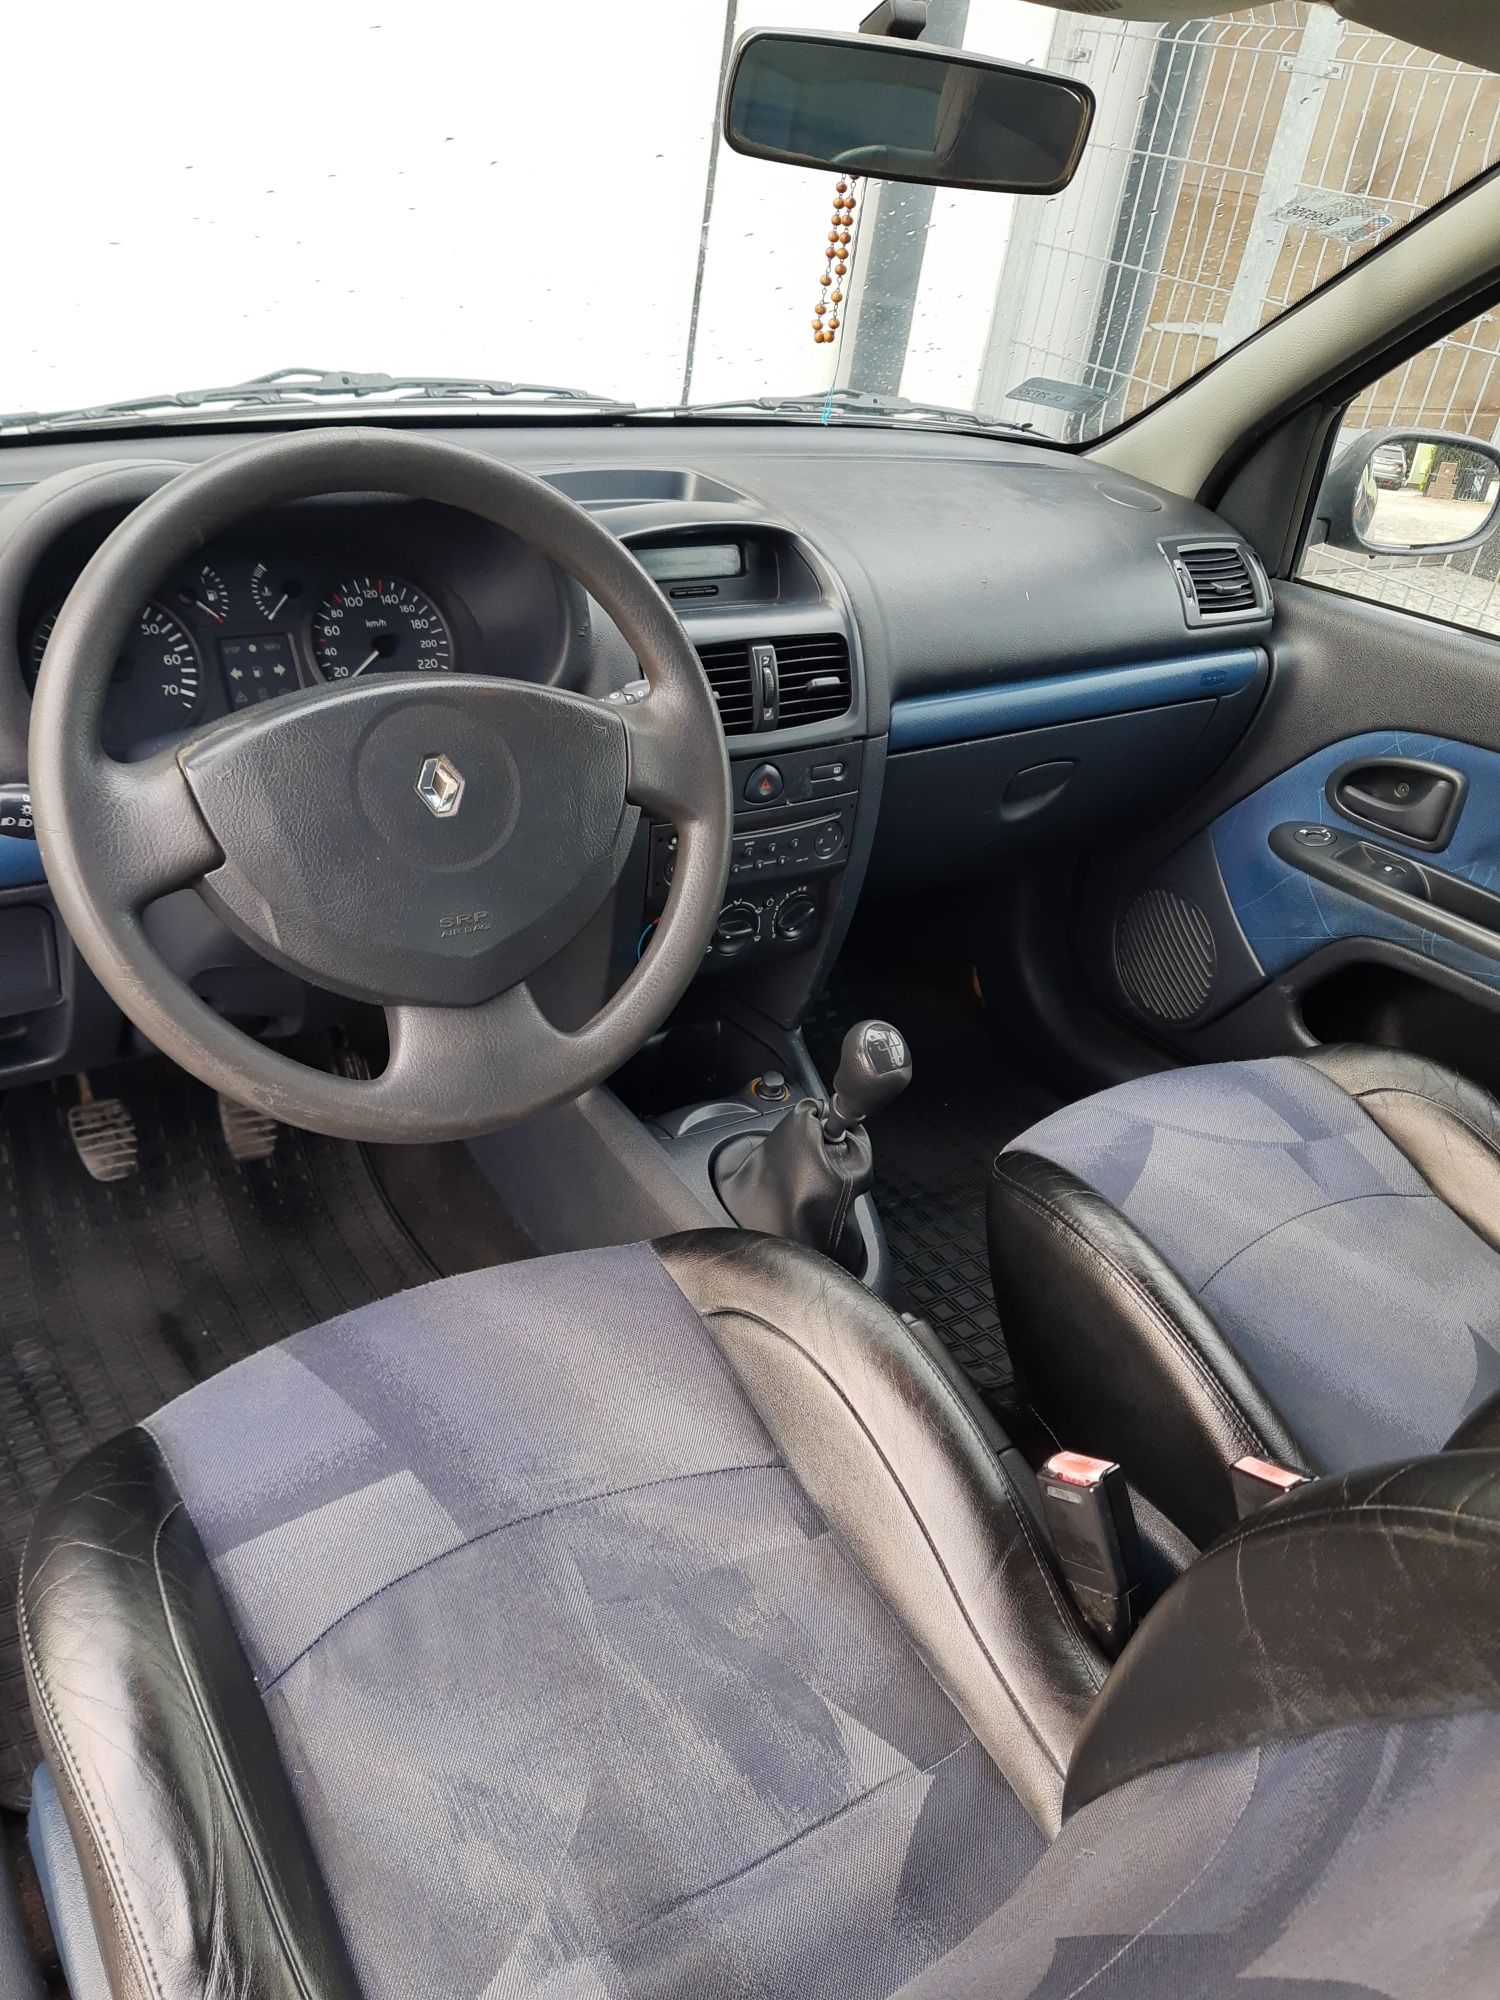 Renault Clio 1.1 benzyna, lady stan, klima